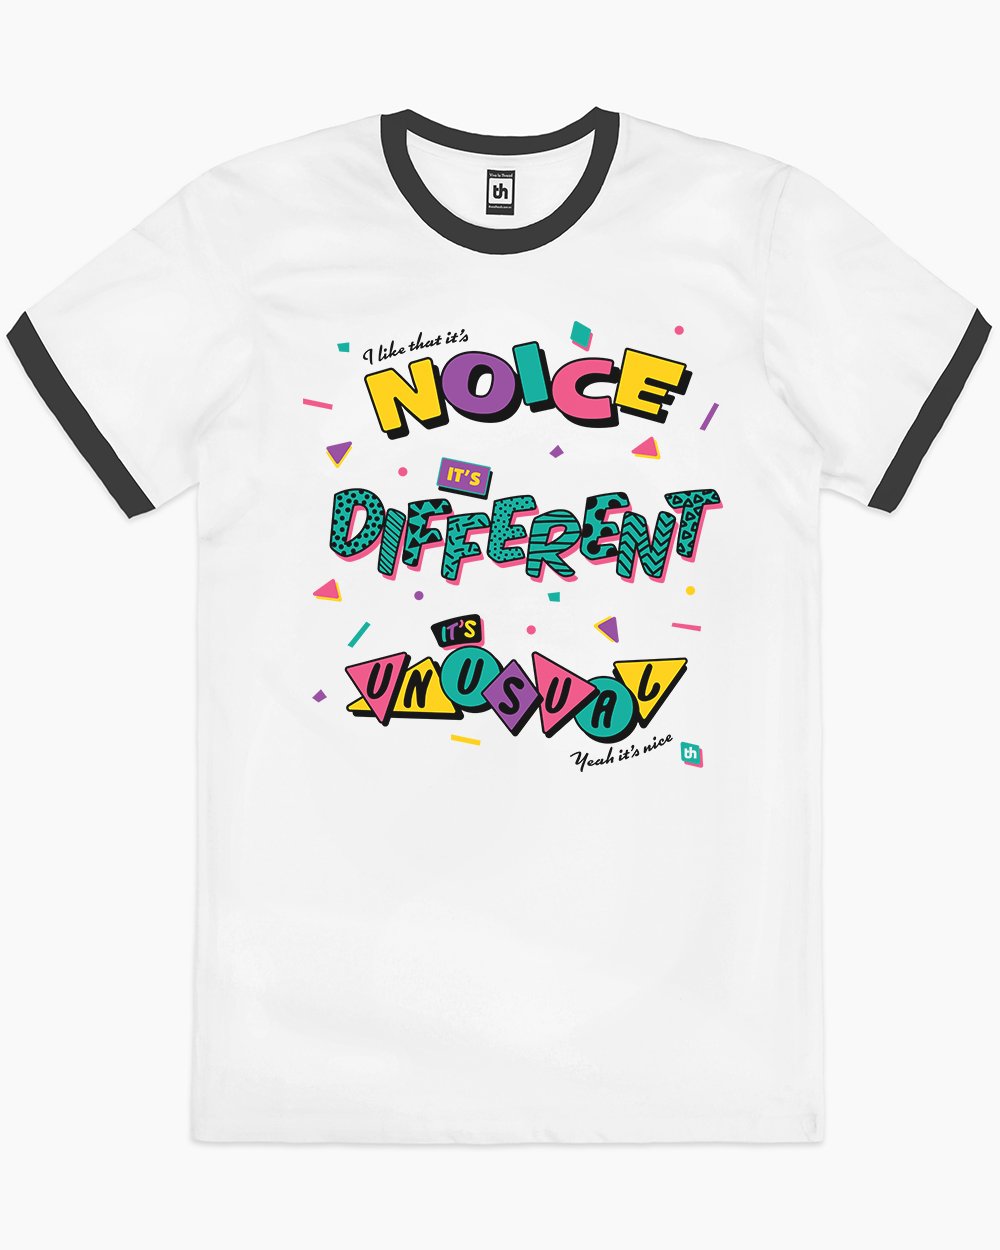 It's Noice It's Different It's Unusual T-Shirt Australia Online #colour_black ringer